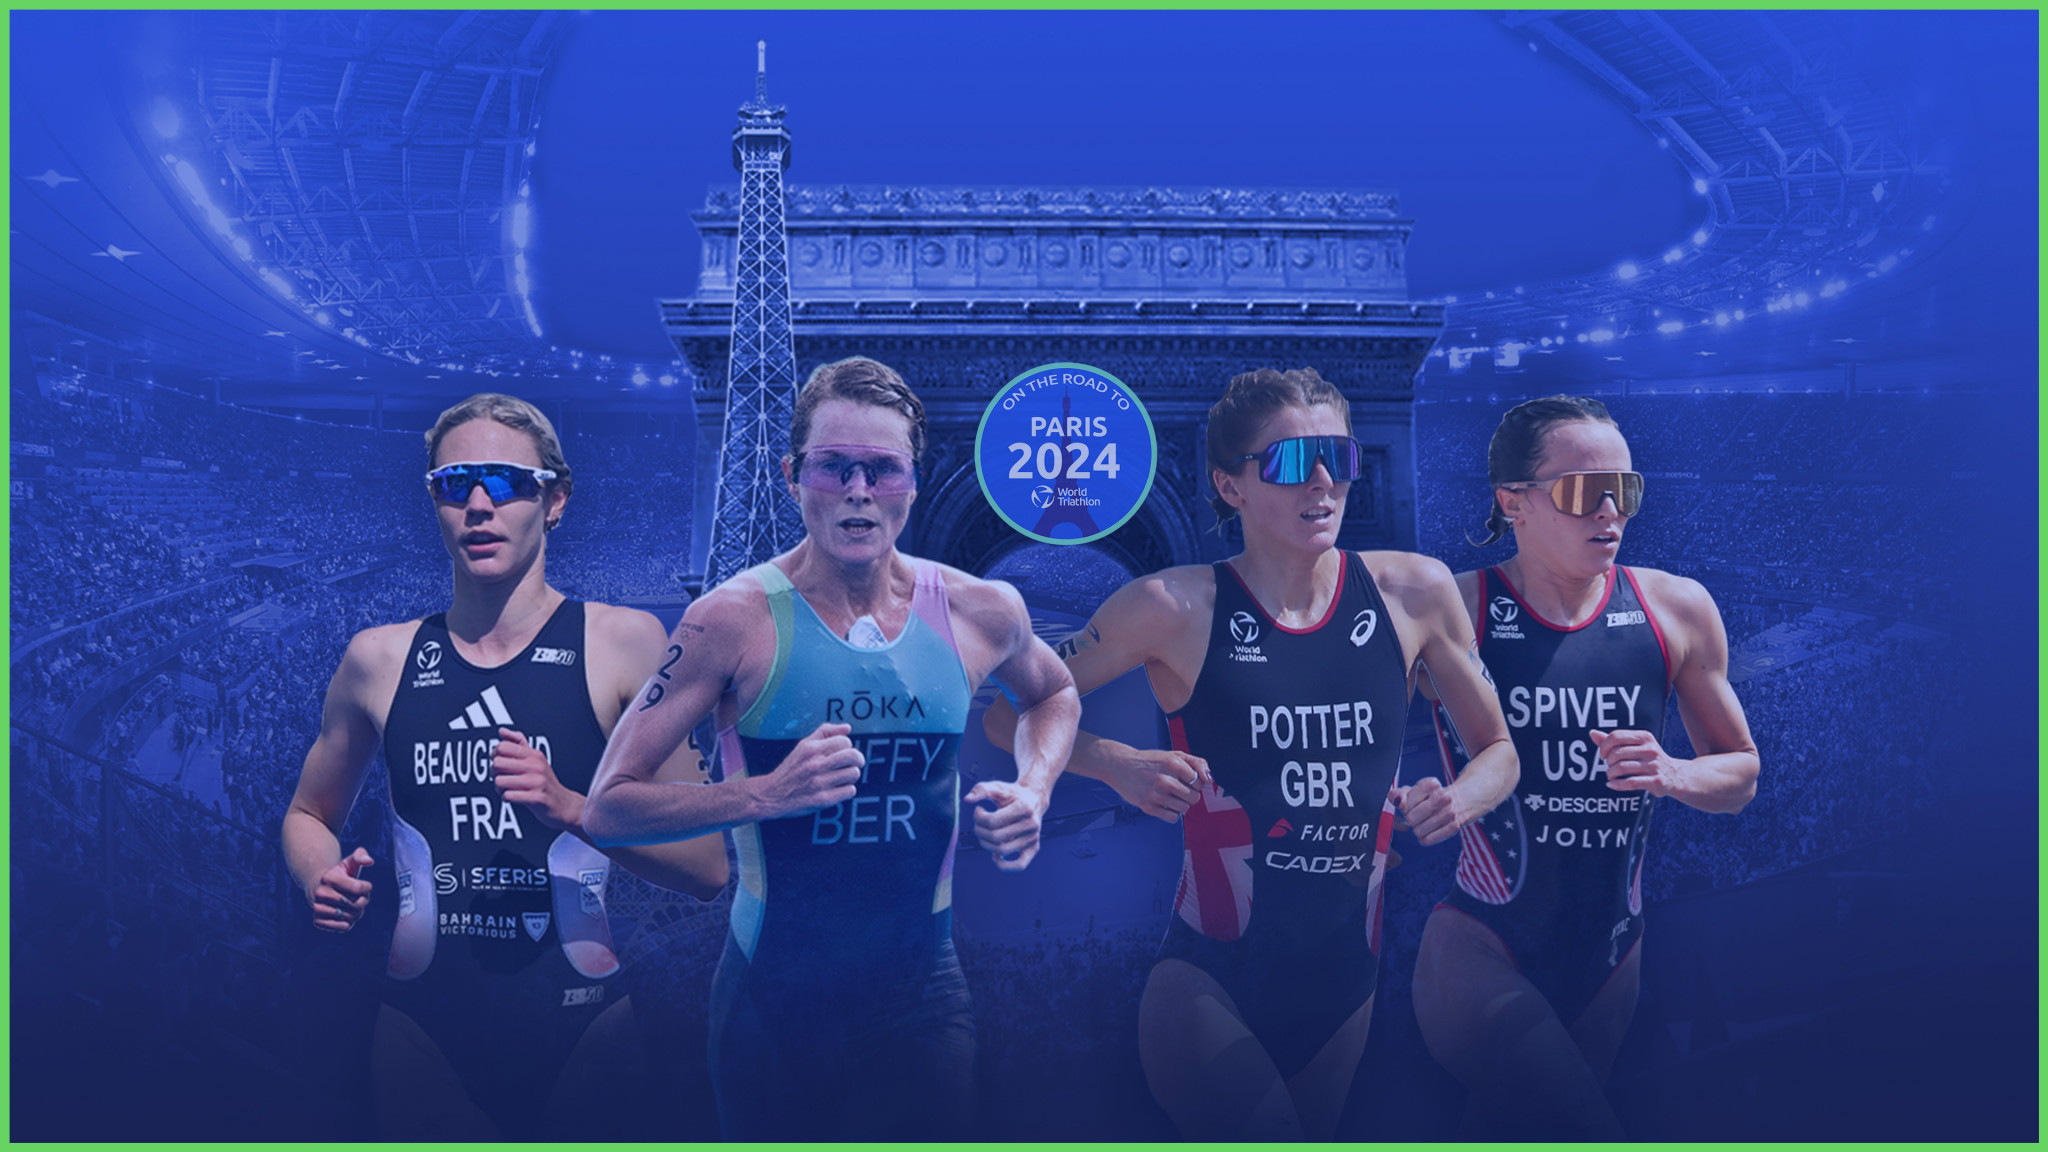 Seine set to stage triathlon Paris 2024 test event after previous pollution concerns